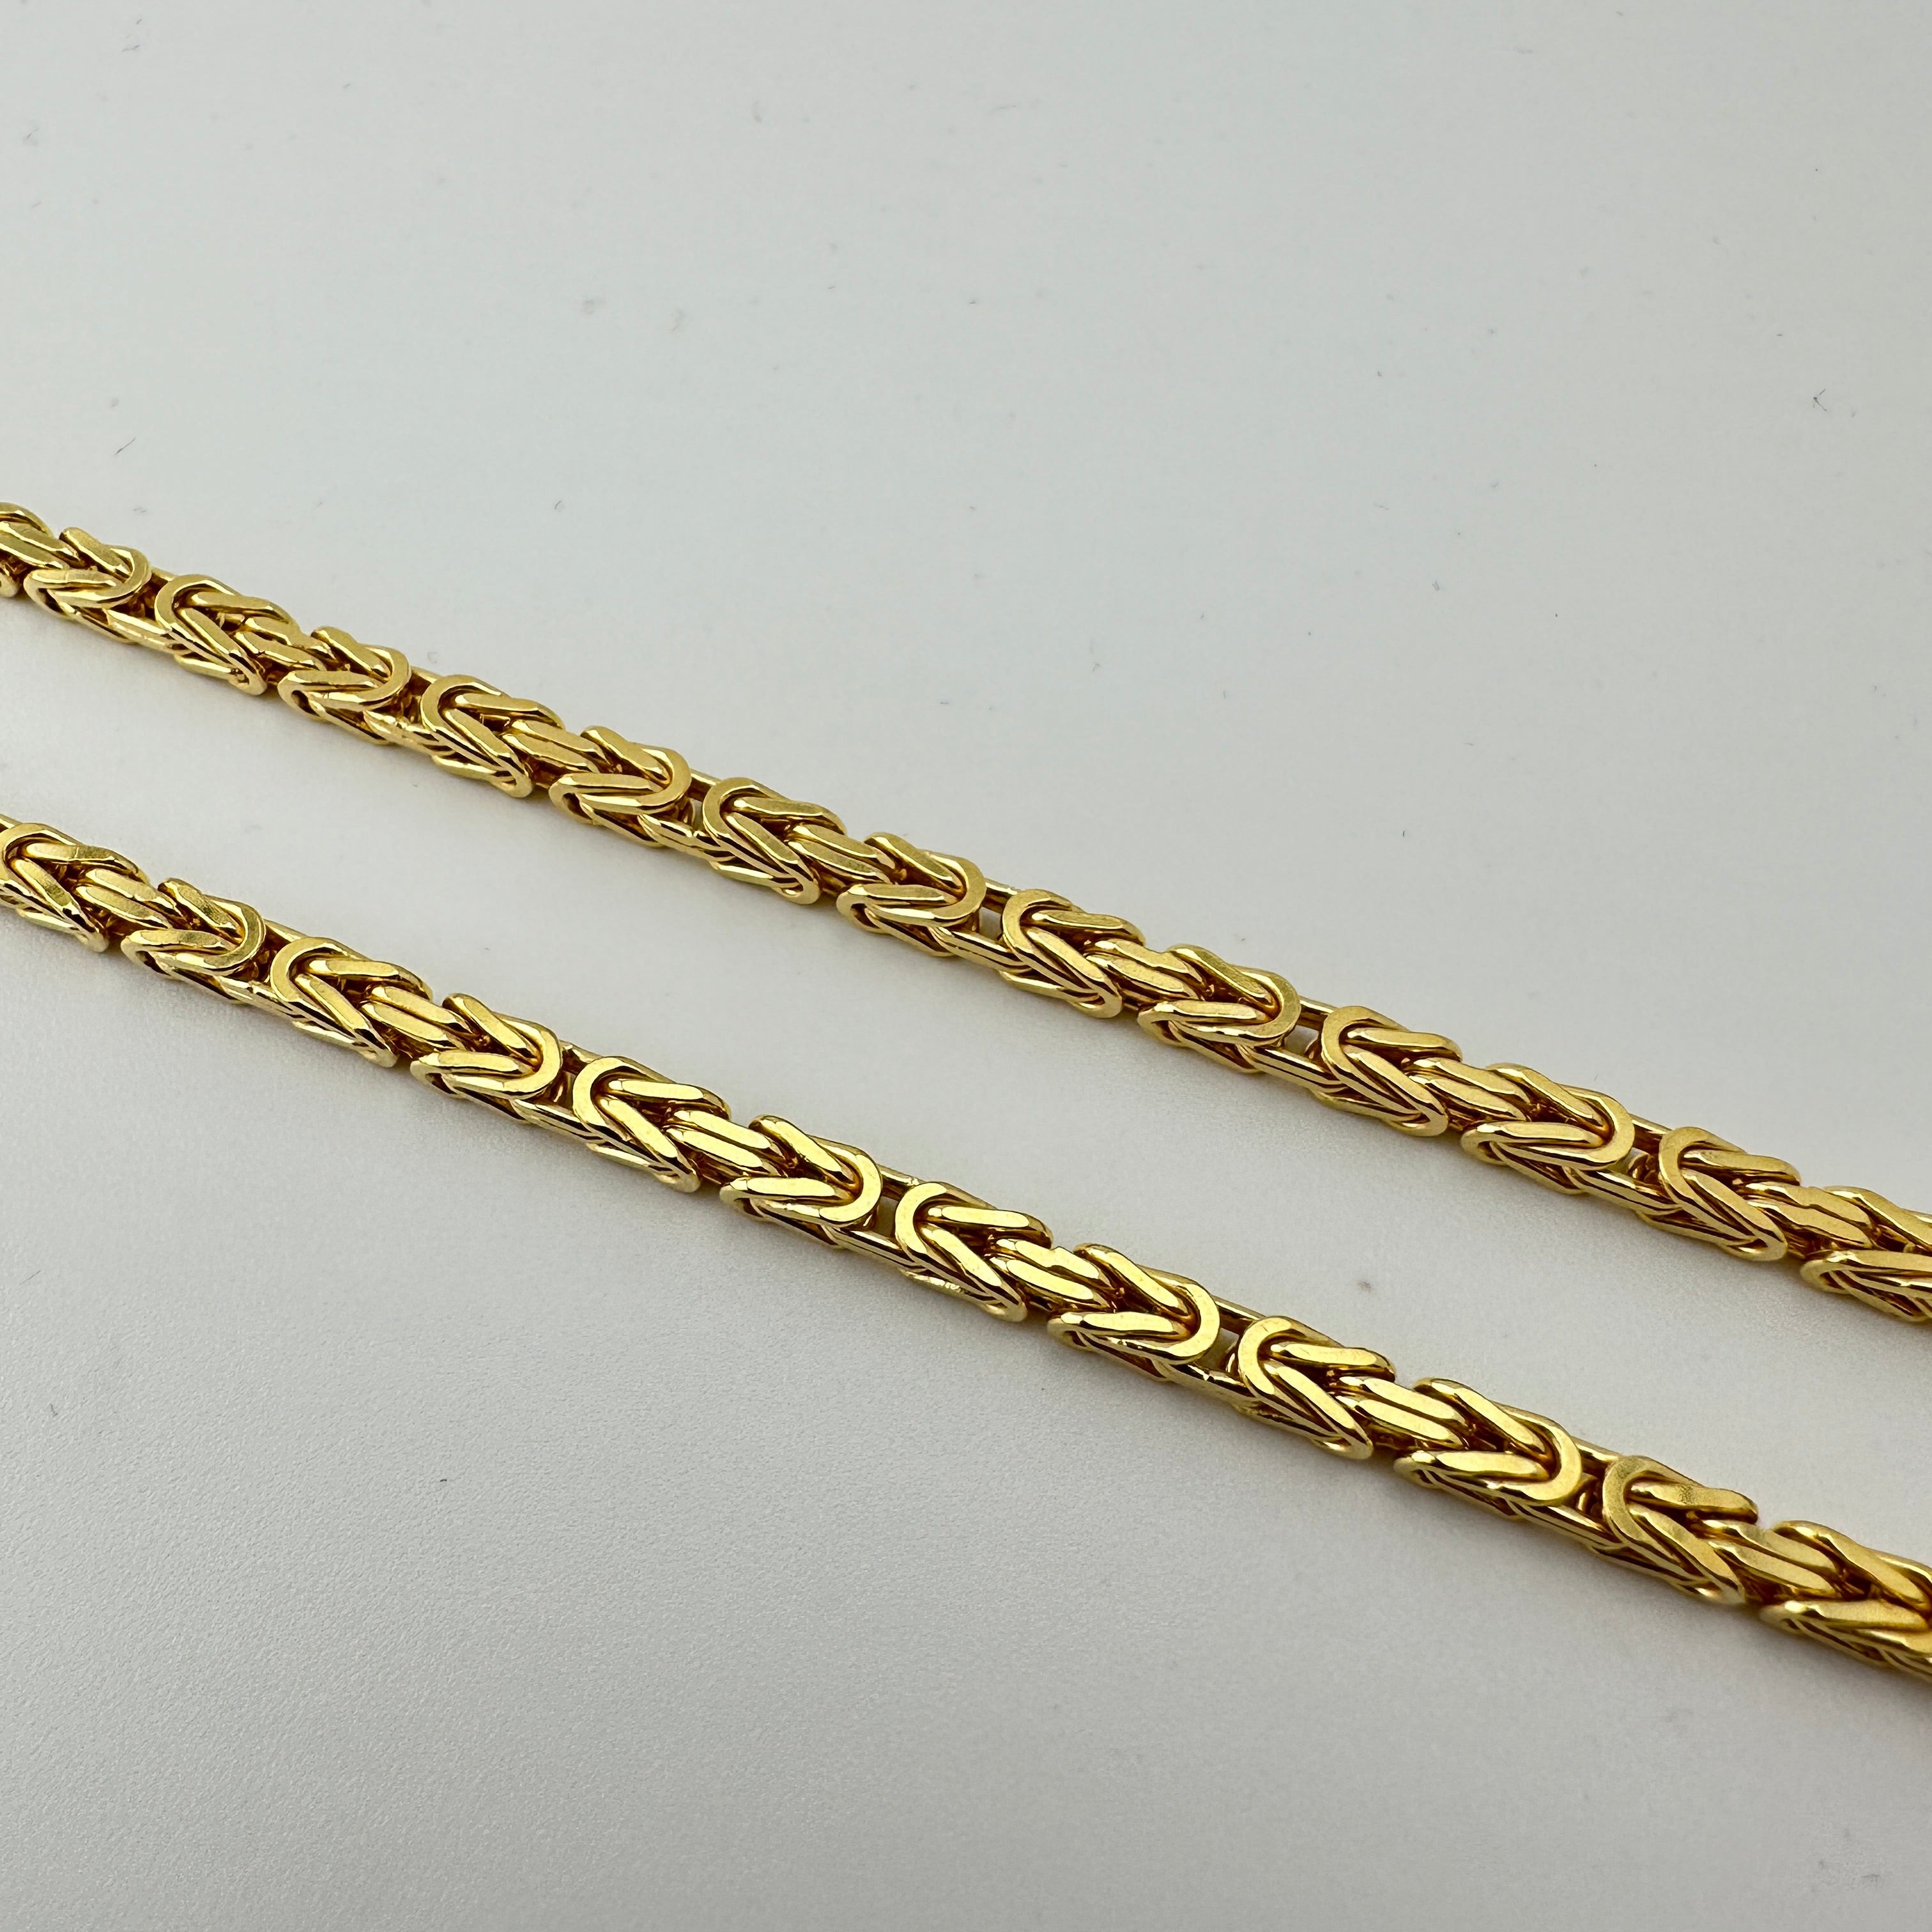 Königskette - 3mm breit - 925er Silber + Echtgold Vergoldung